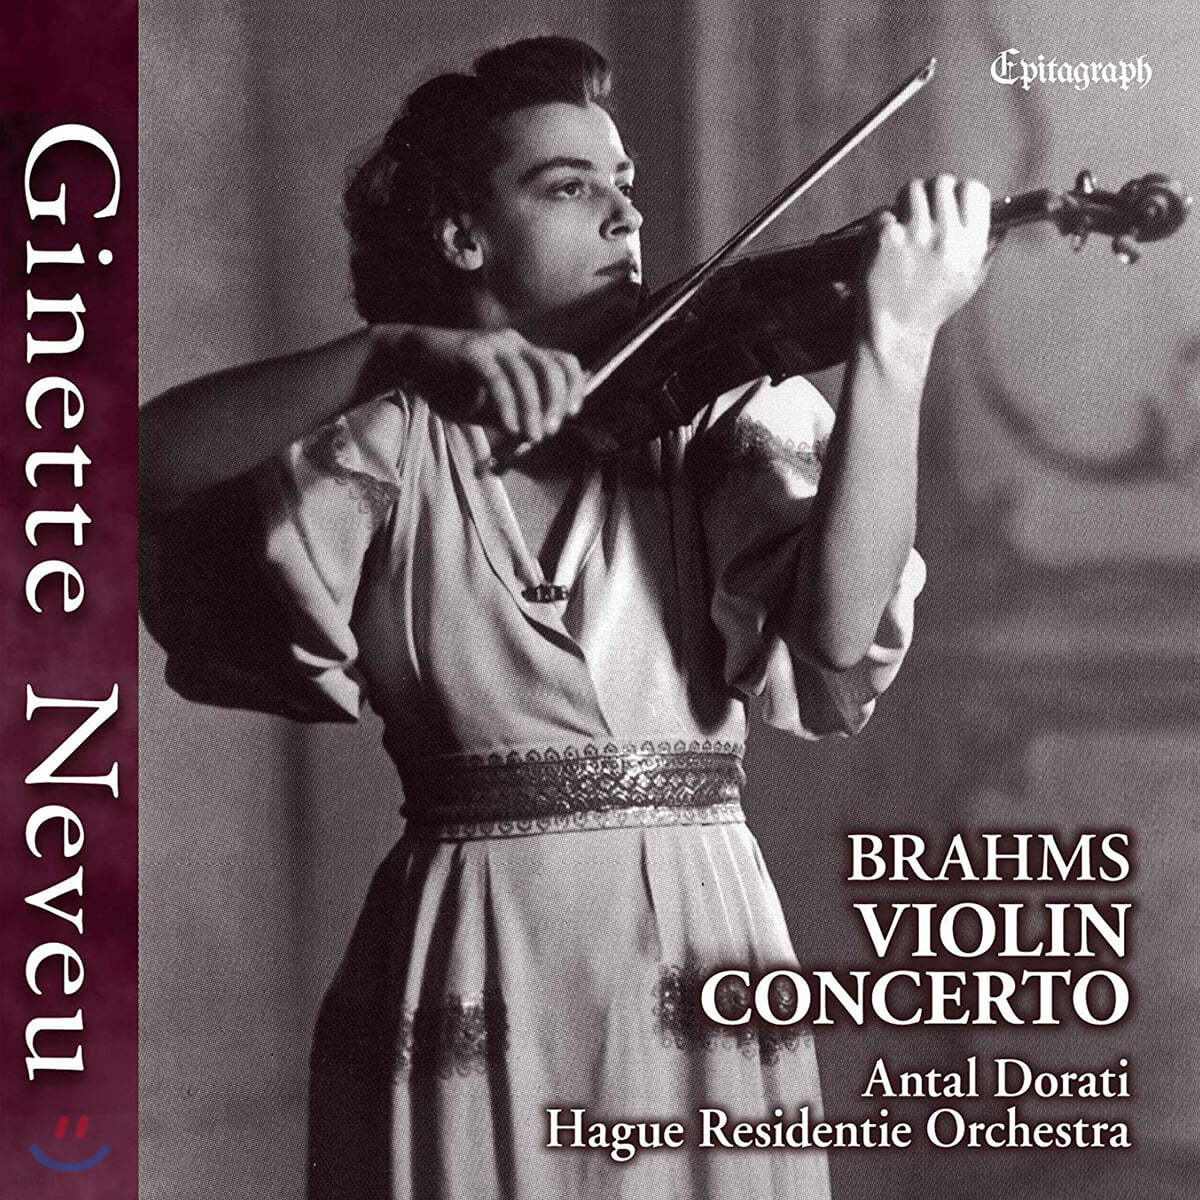 Ginette Neveu 브람스: 바이올린 협주곡 (Brahms: Violin Concerto)